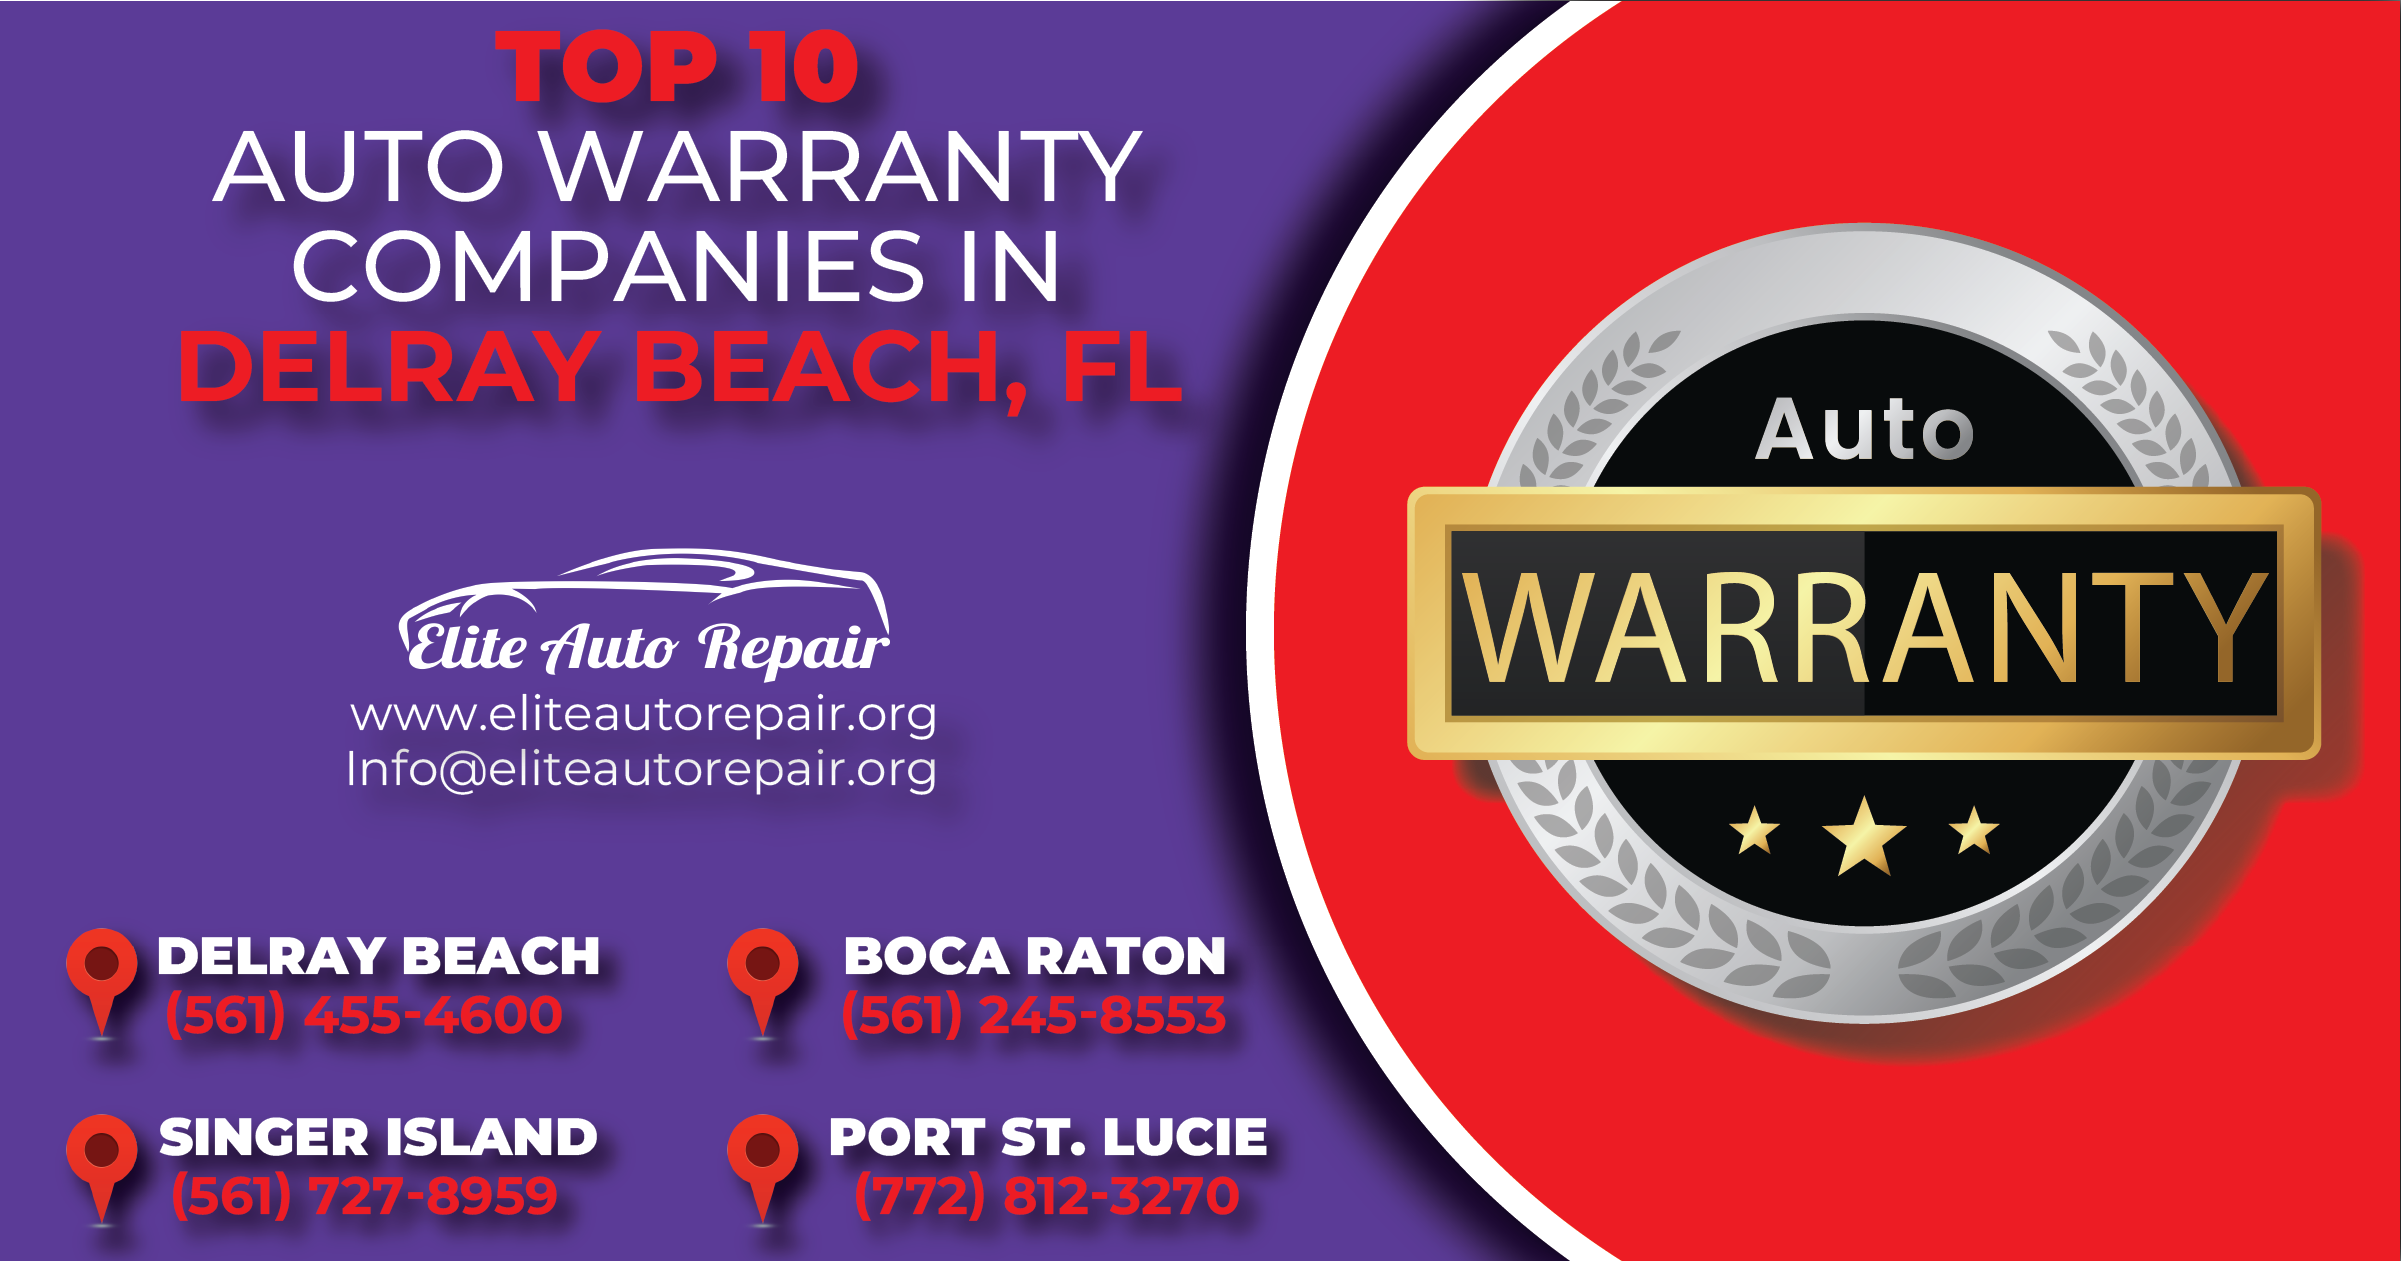 Top 10 Auto Warranty Companies in Delray Beach Florida